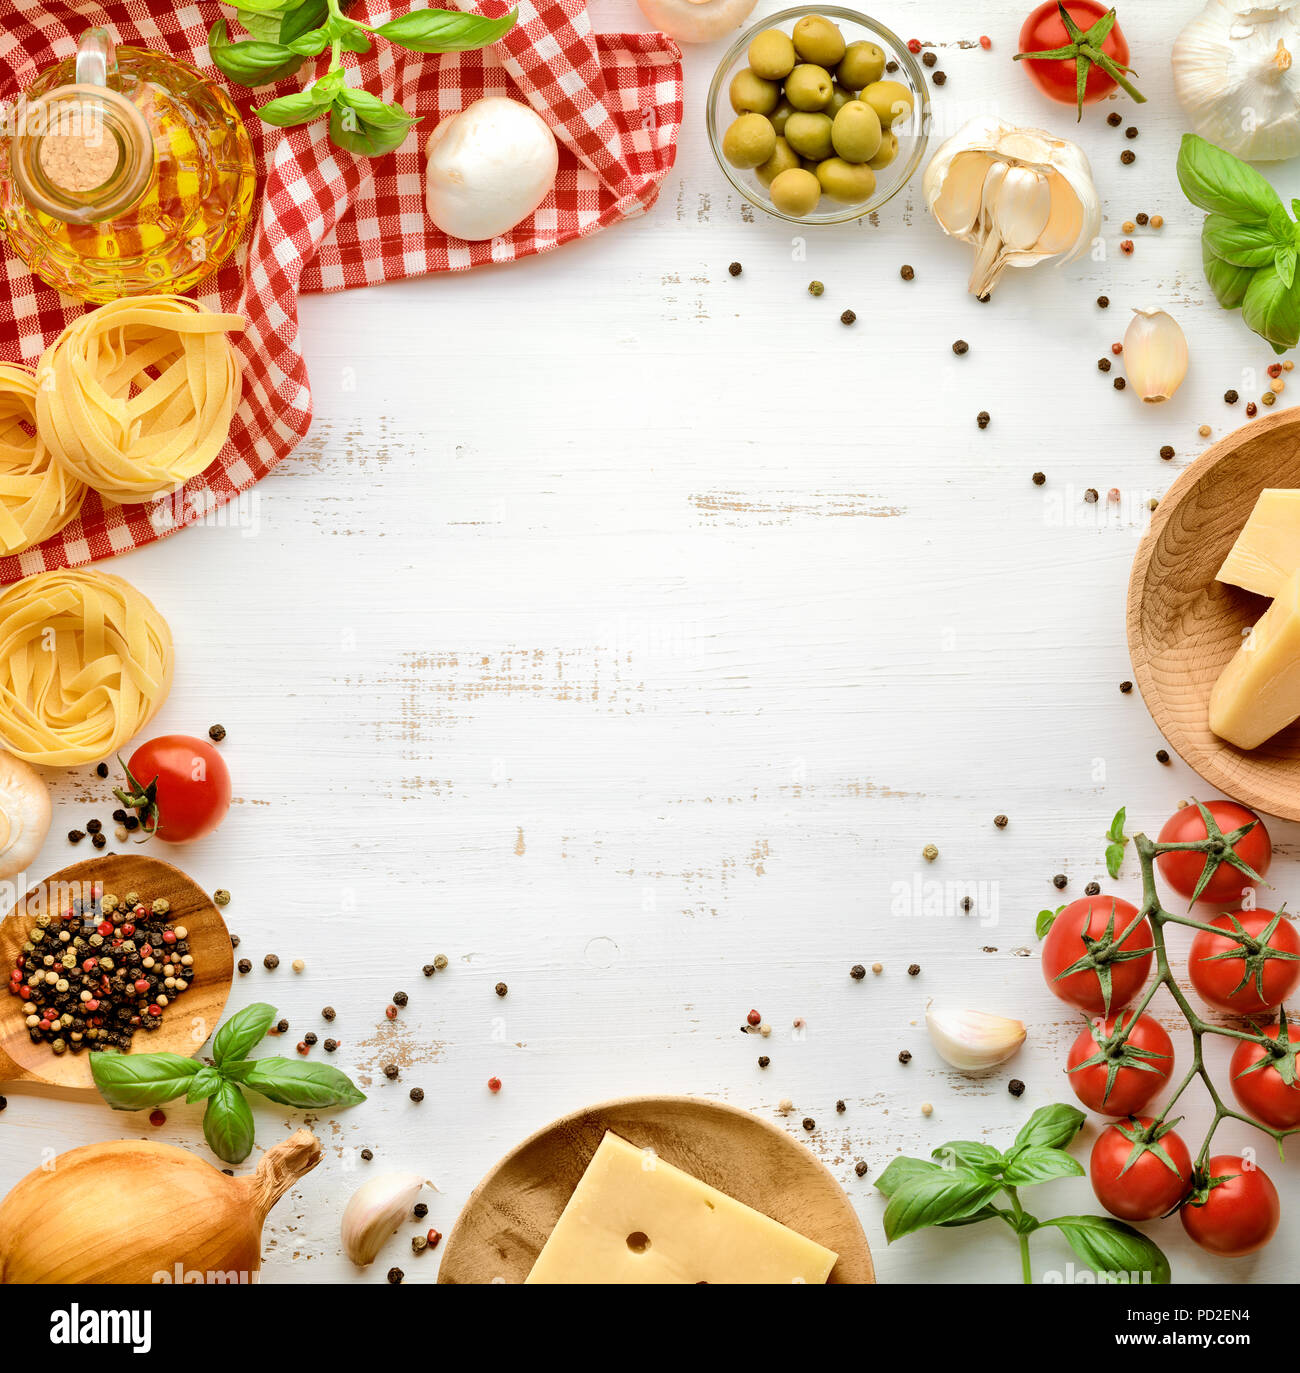 Les pâtes à la tomate, basilic ingrédients ,l'ail ,le persil ,les feuilles de laurier, le poivre et le fromage blanc sur fond de bois. Banque D'Images